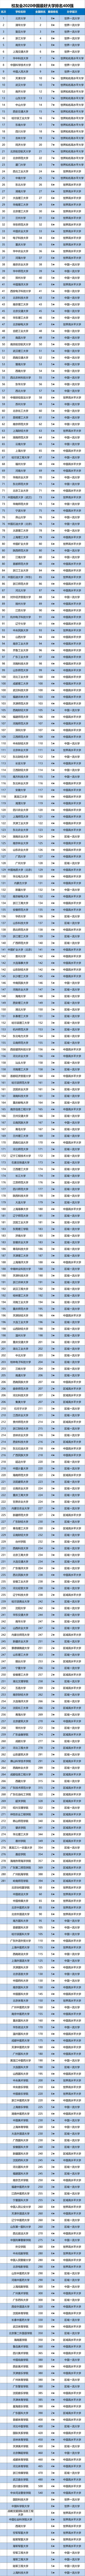 2020年全国排名前十_原创中国摩托车“出口冠军”:10个月卖出65万辆,连续